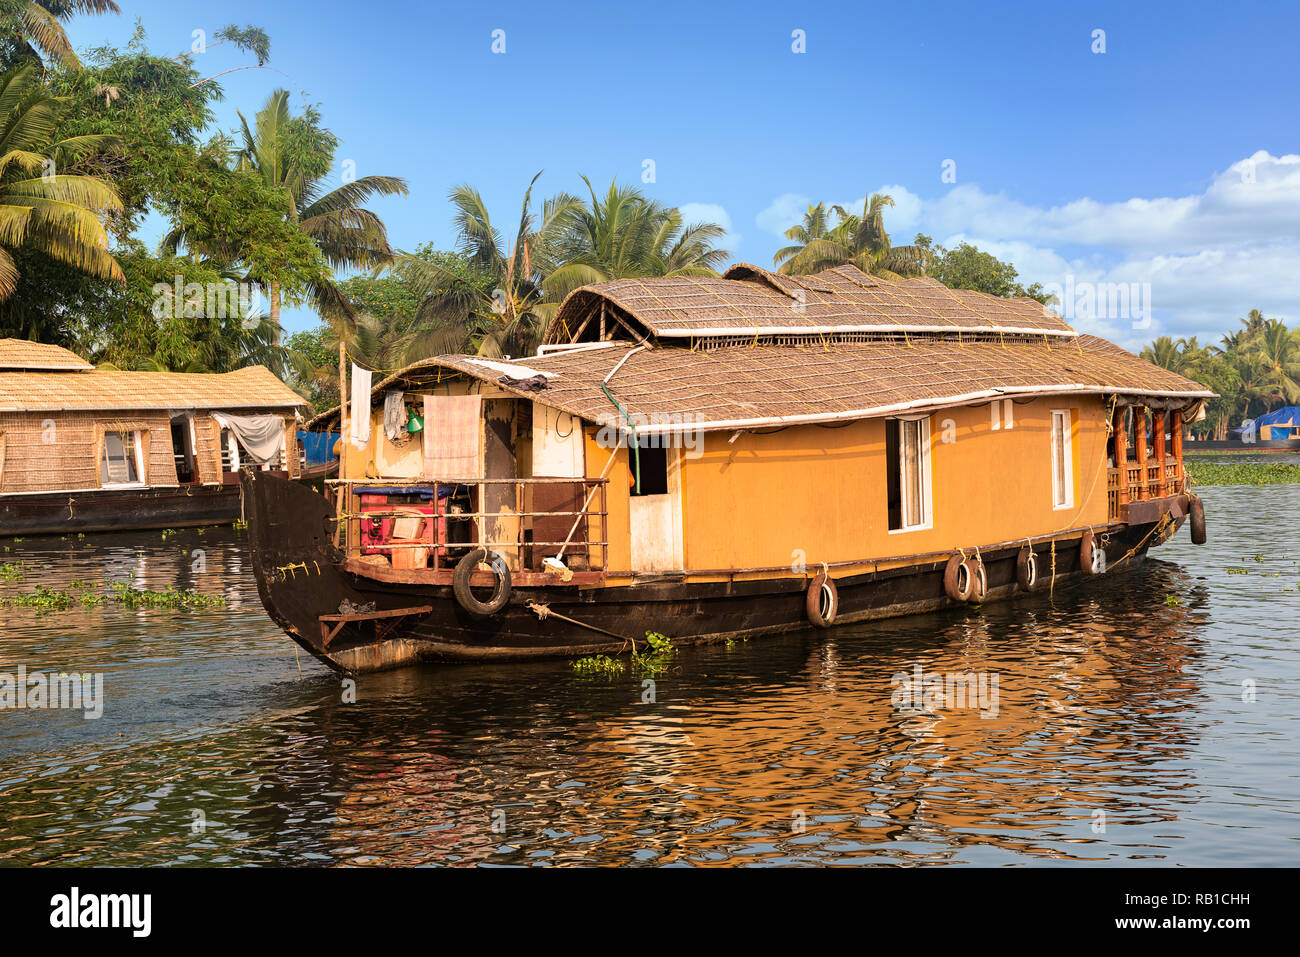 Una casa tradizionale barca è ancorata sulle rive di un lago per la pesca sportiva in Kerala la lagune, India. - Immagine Foto Stock